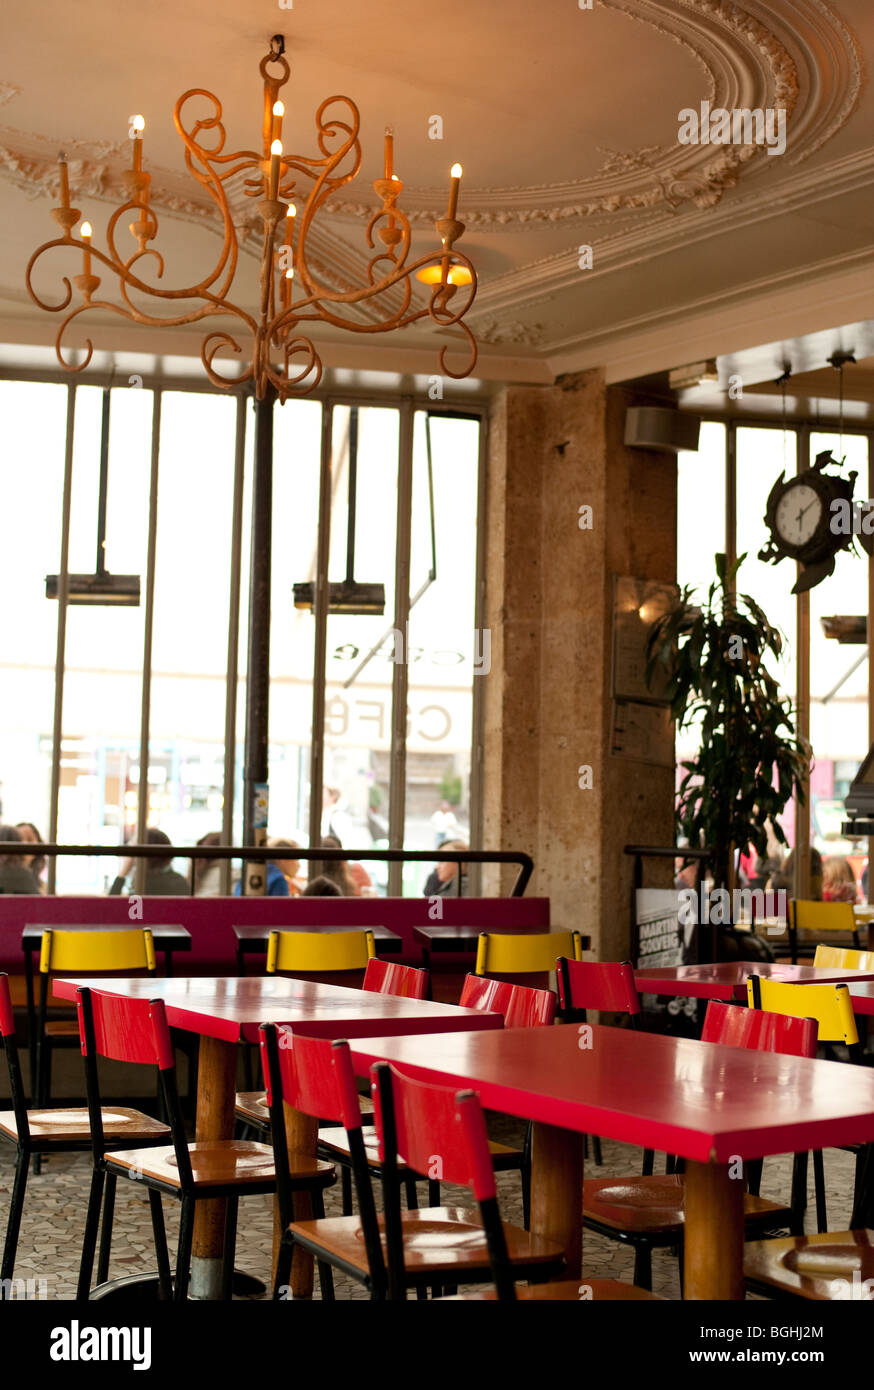 Tables rouge pendant la pause café, à l'angle de la rue de Charonne, dans le quartier branché de la bastille de Paris, France, Europe Banque D'Images